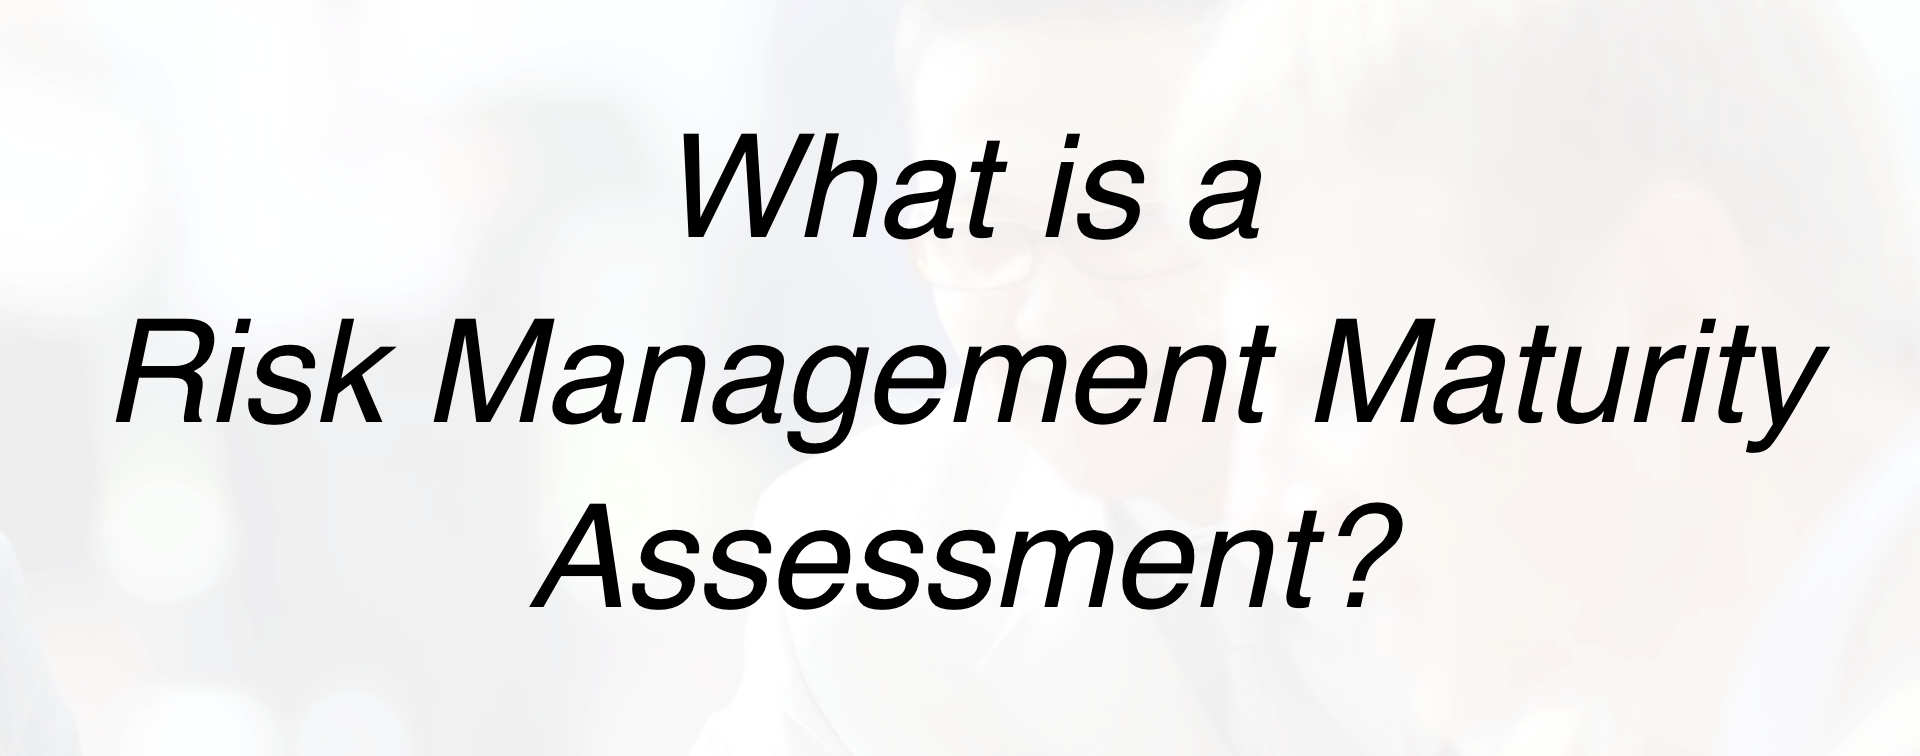 Risk Management Maturity Assessment